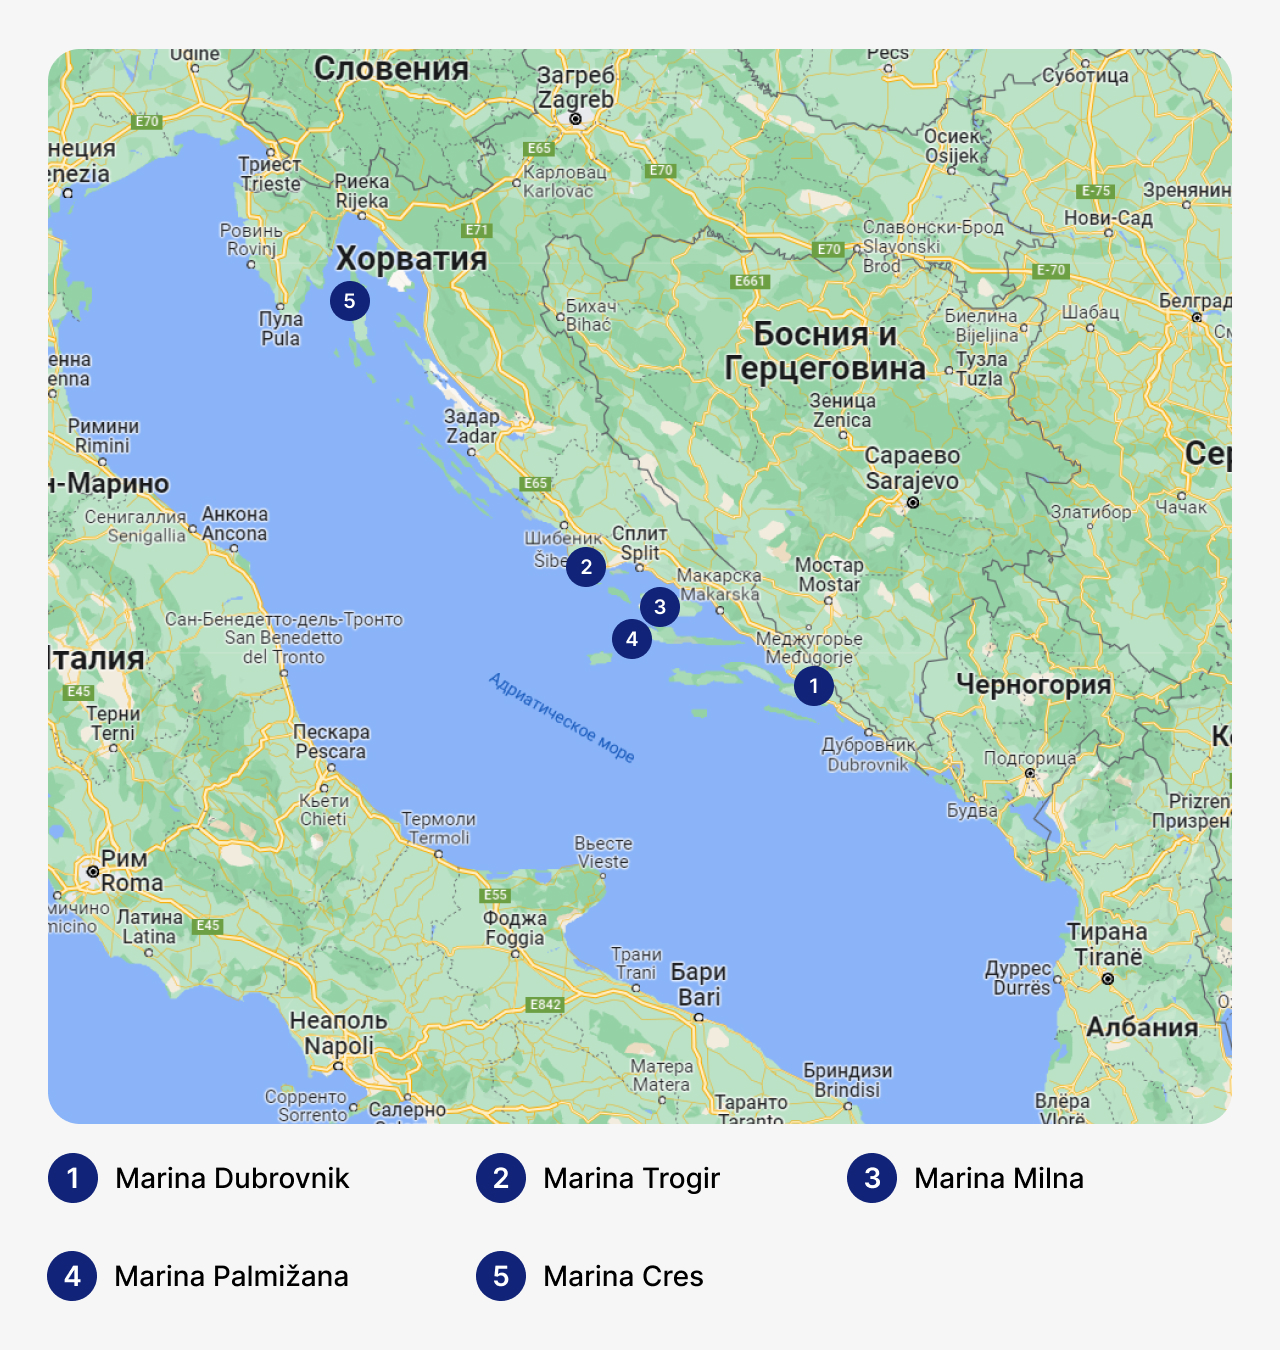 Лучшие марины в Хорватии, карта Хорватии с маринами, стоянка для яхт в Хорватии, где хранить яхты в Хорватии
